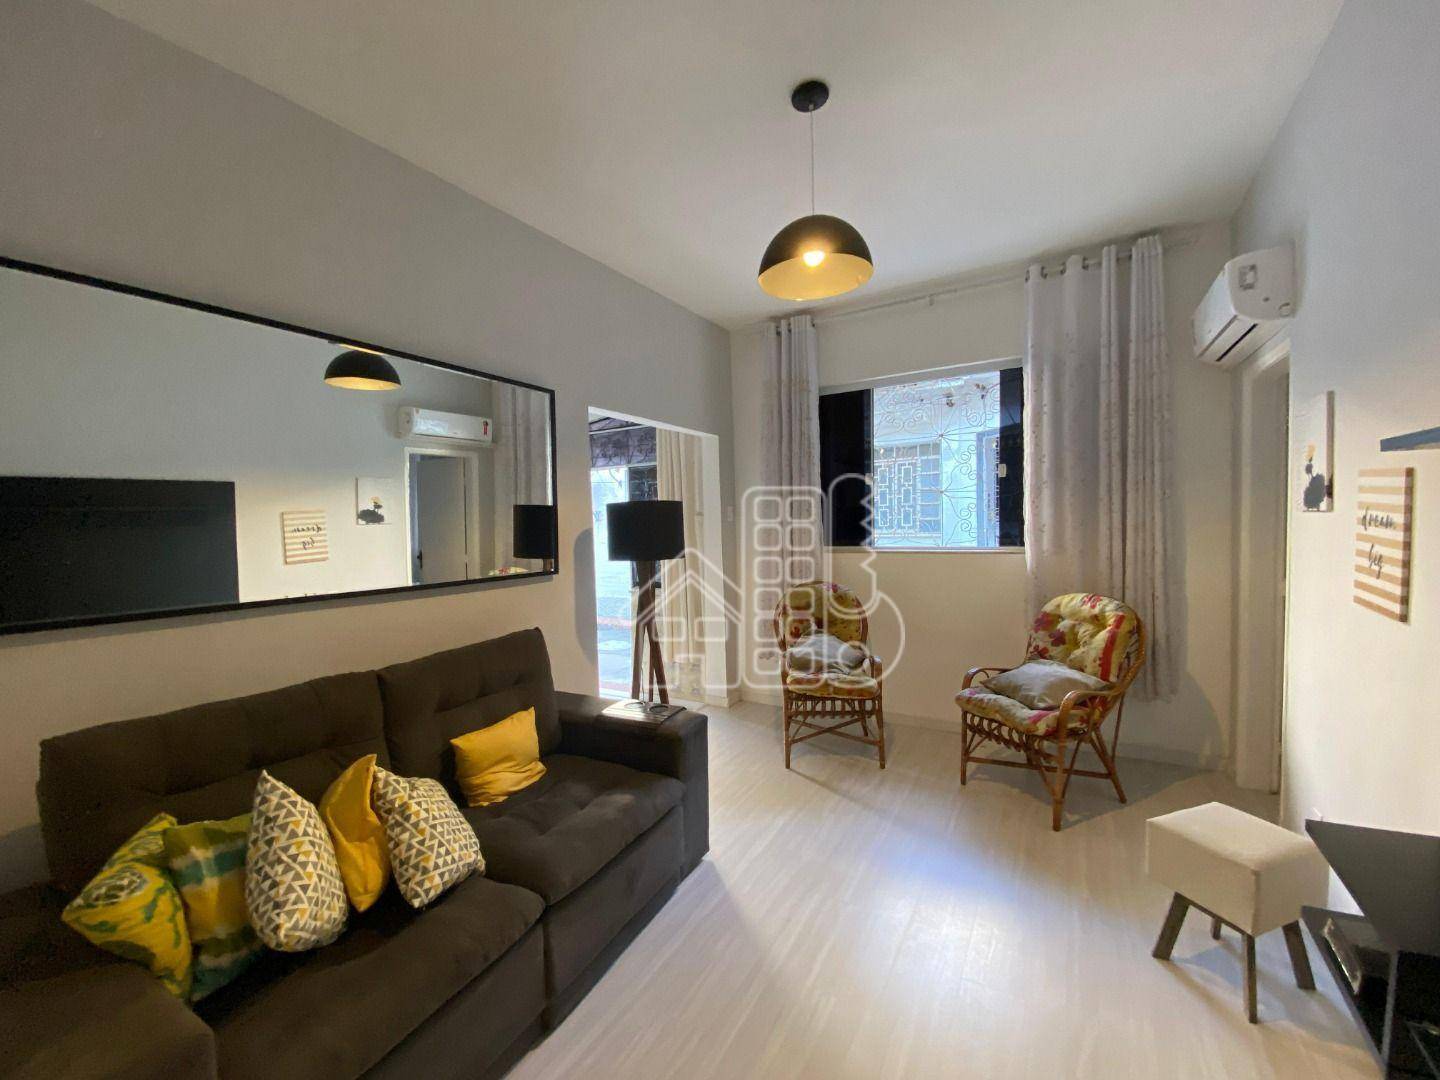 Casa com 3 dormitórios para alugar, 100 m² por R$ 3.183,30/mês - Icaraí - Niterói/RJ